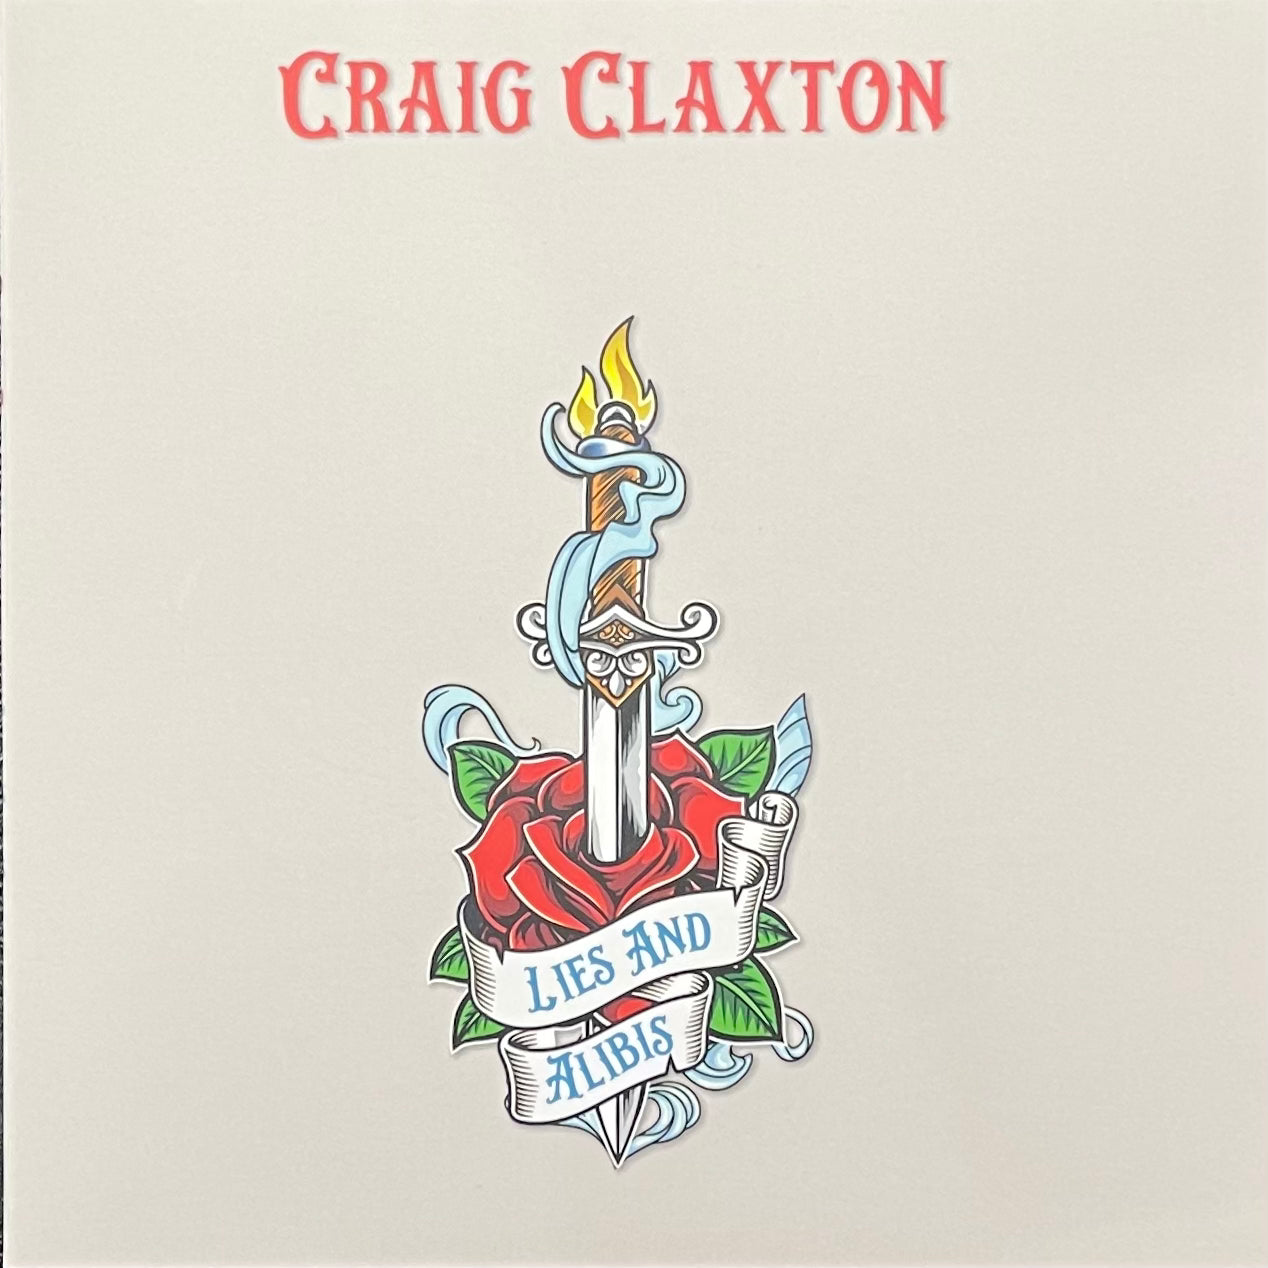 Craig Claxton - "Lies and Alibis" CD